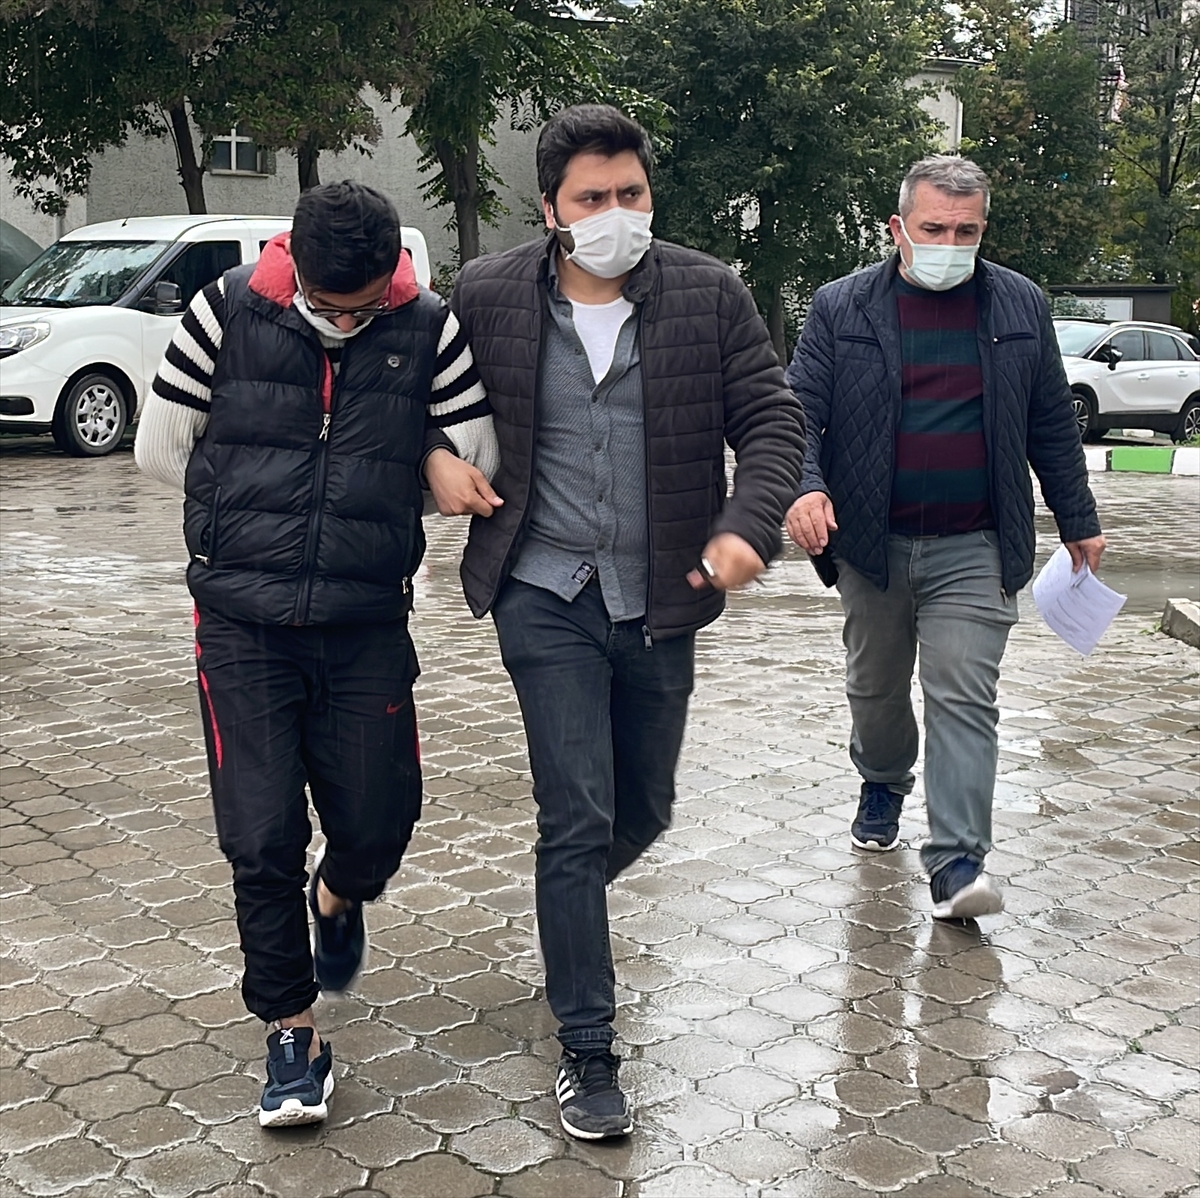 Samsun'da eğlence mekanını kurşunlayıp kundakladıkları iddiasıyla 5 kişi yakalandı